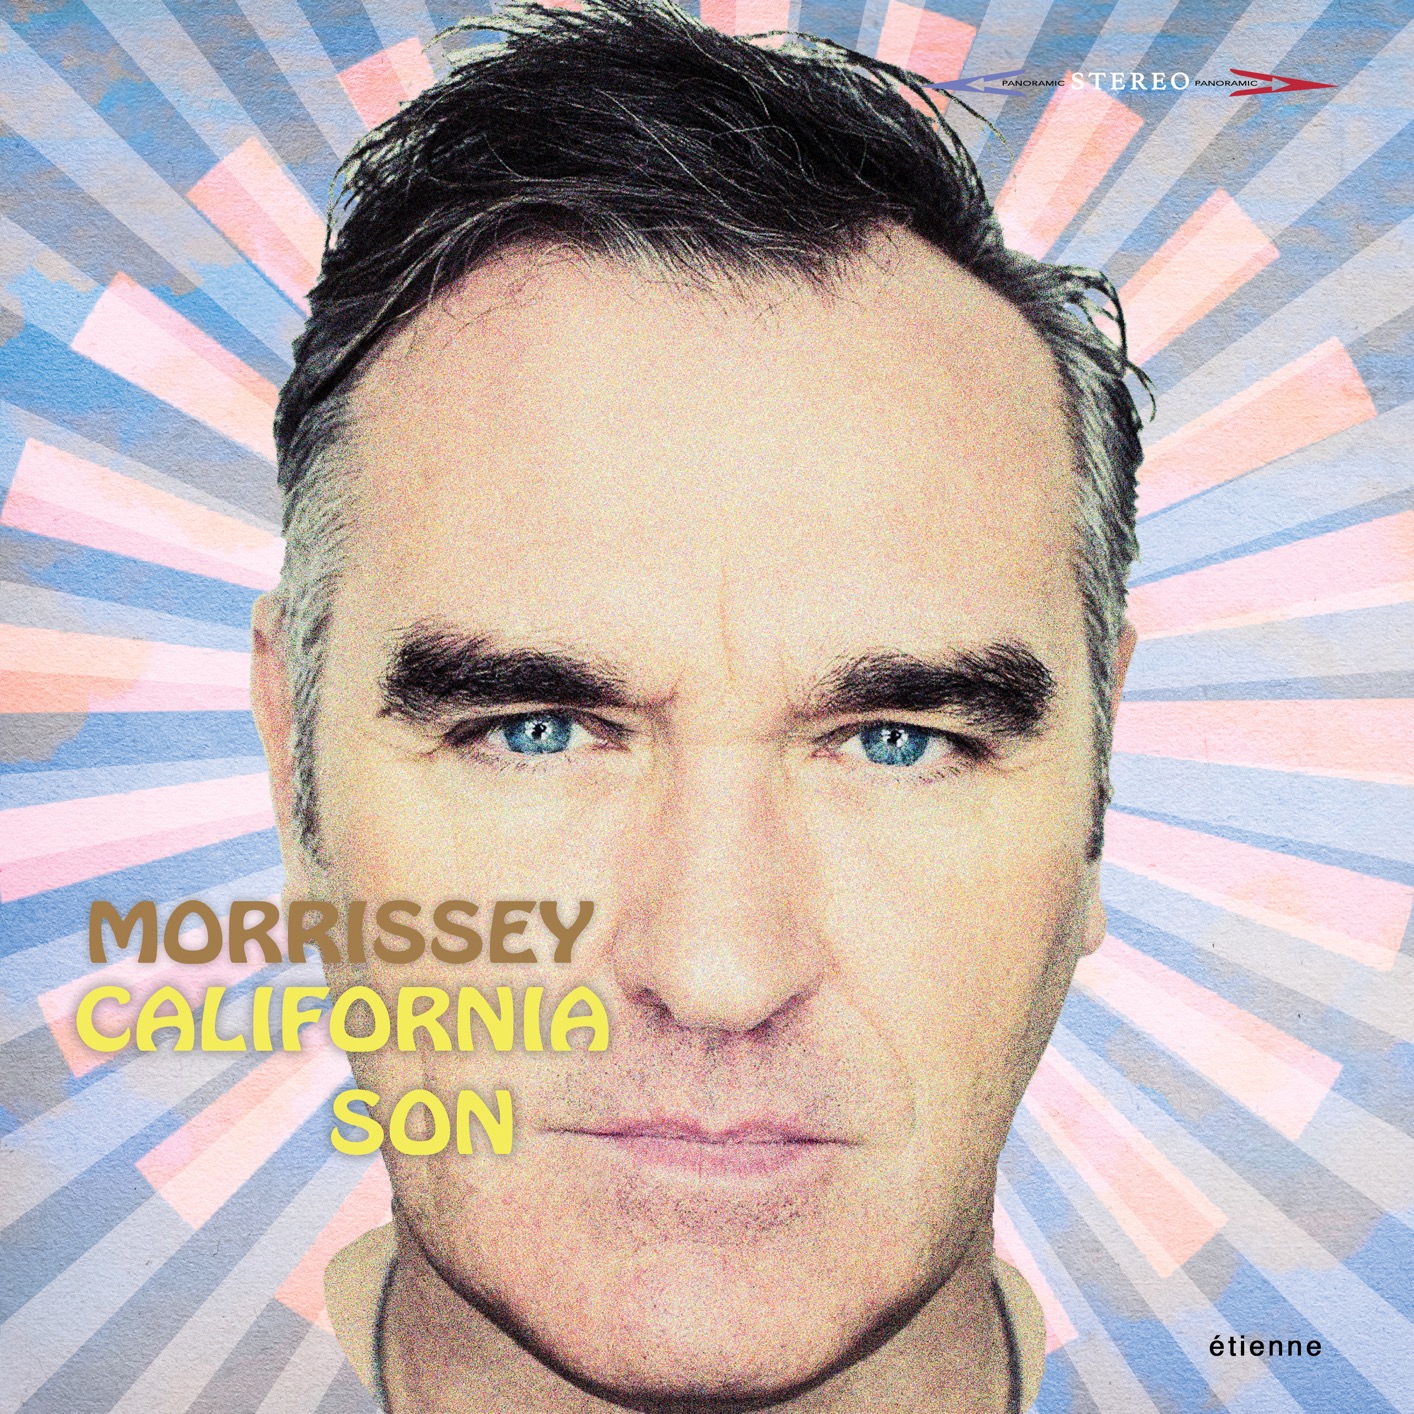 Morrissey – California Son (2019) [FLAC 24bit/96kHz]